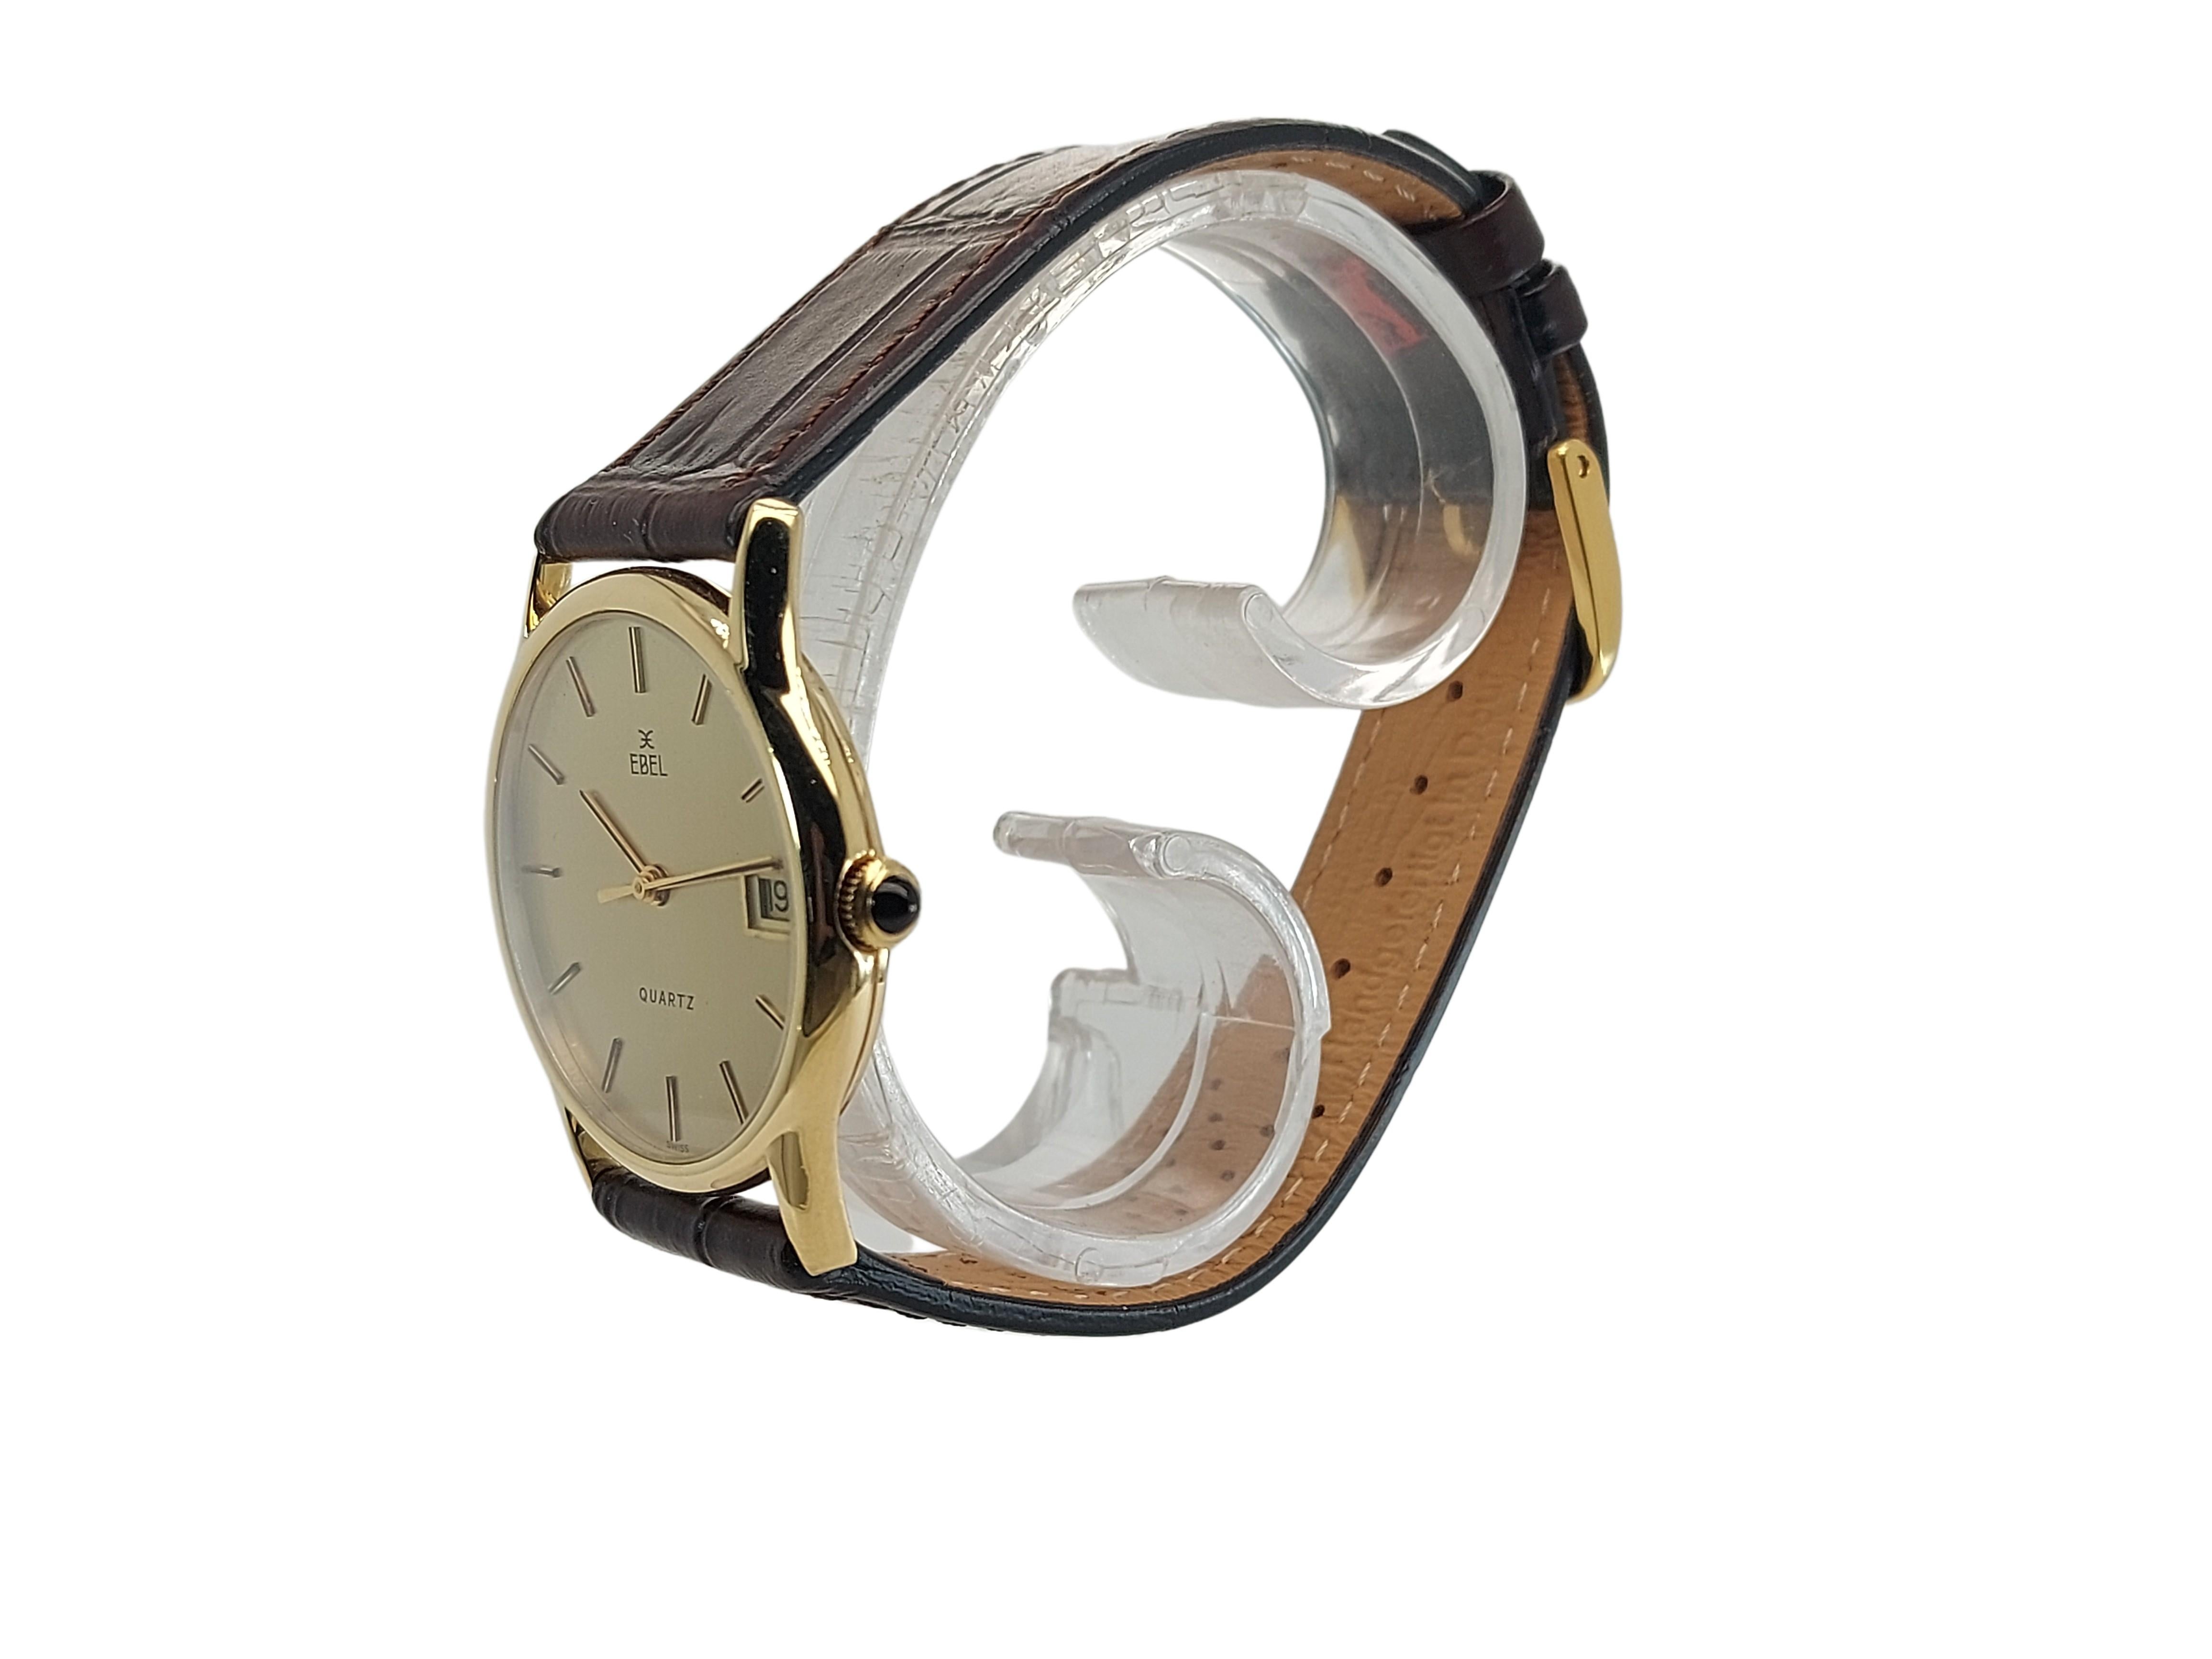 ebel vintage watch